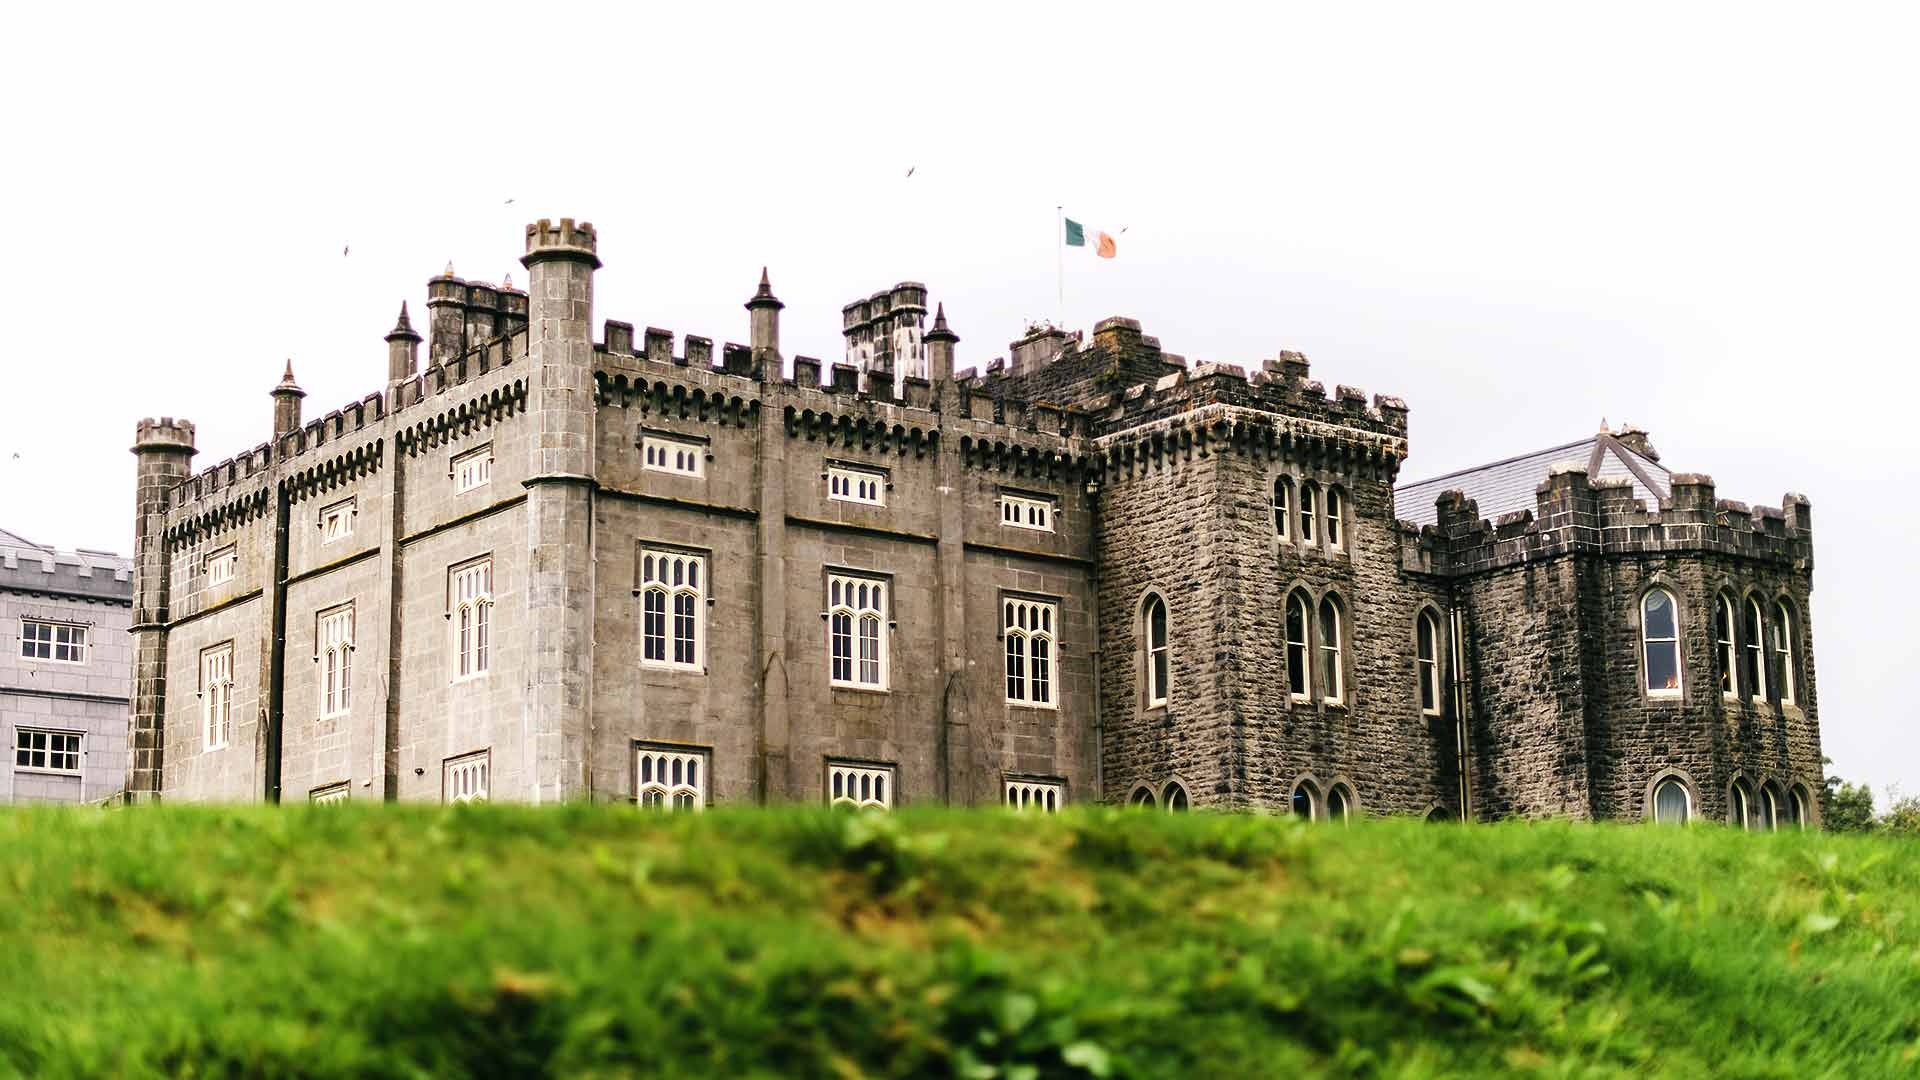 Irish Castle Hotels, Kilronan Castle, Castle Hotels Ireland, Gallery, 1920x1080 Full HD Desktop